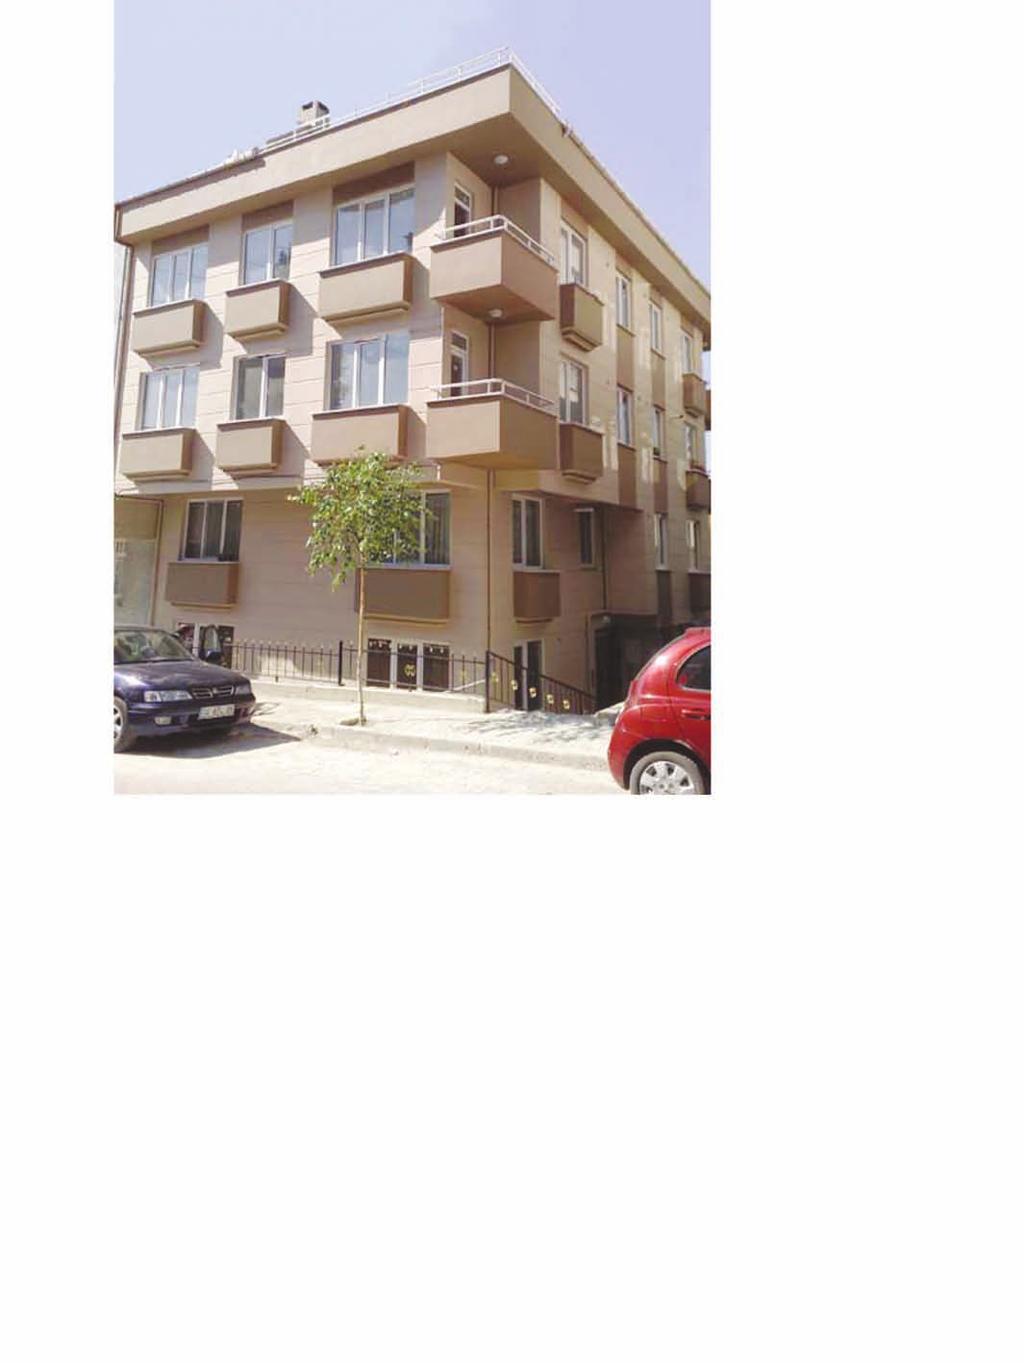 Büşra Building / Büşra Apartment Building Proje Açıklaması: Avcılar Cihangir de inşa edilen Büşra Apartmanı 8 daire olup, toplam inşaat alanı 1.200 m 2 dir. 2008 yılında tamamlanmıştır.